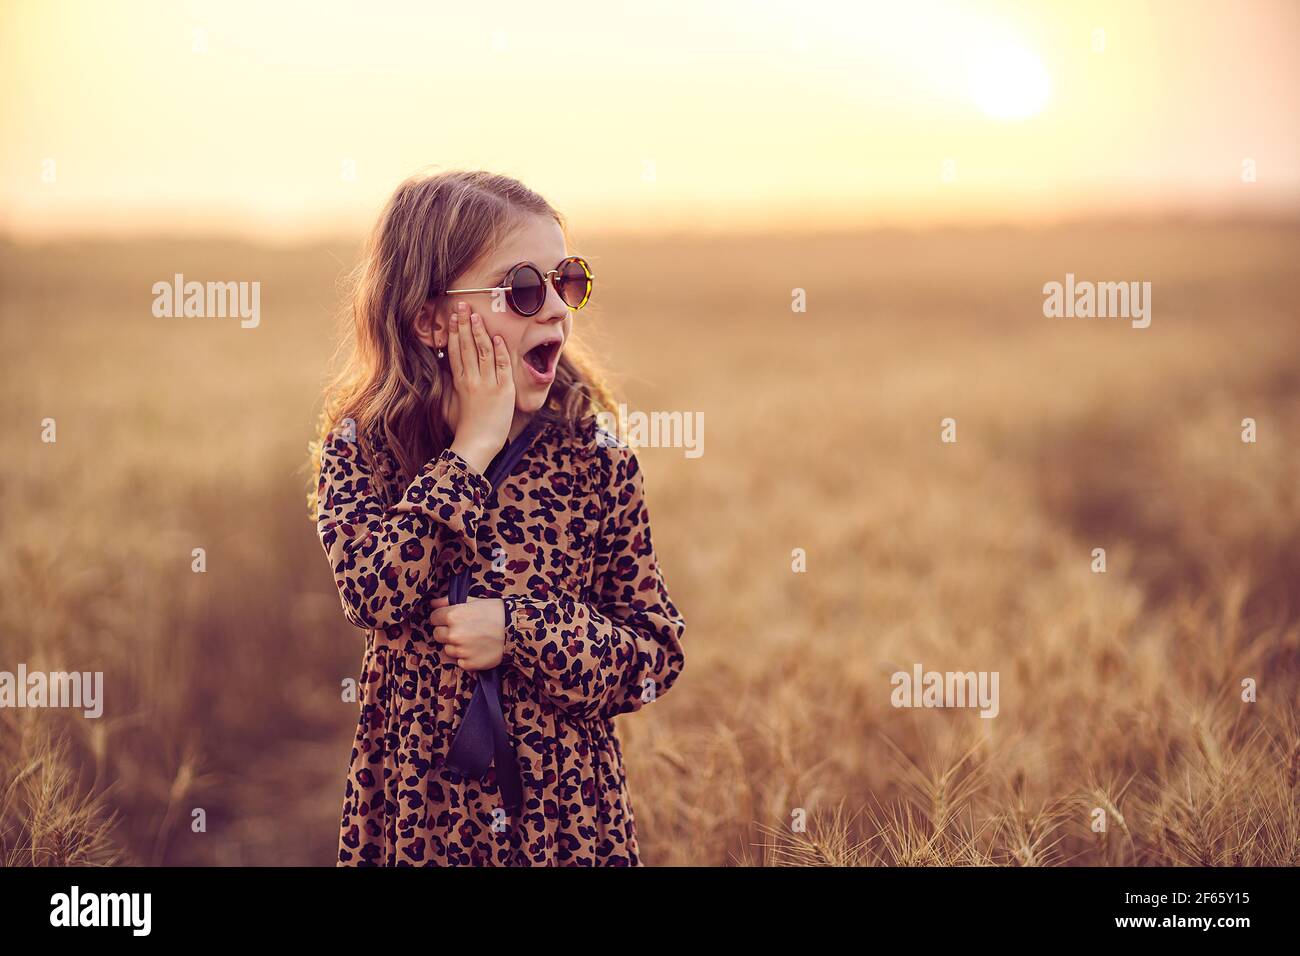 Belle petite fille portant une robe léopard et des lunettes de soleil  arrondies debout dans le champ de blé Photo Stock - Alamy